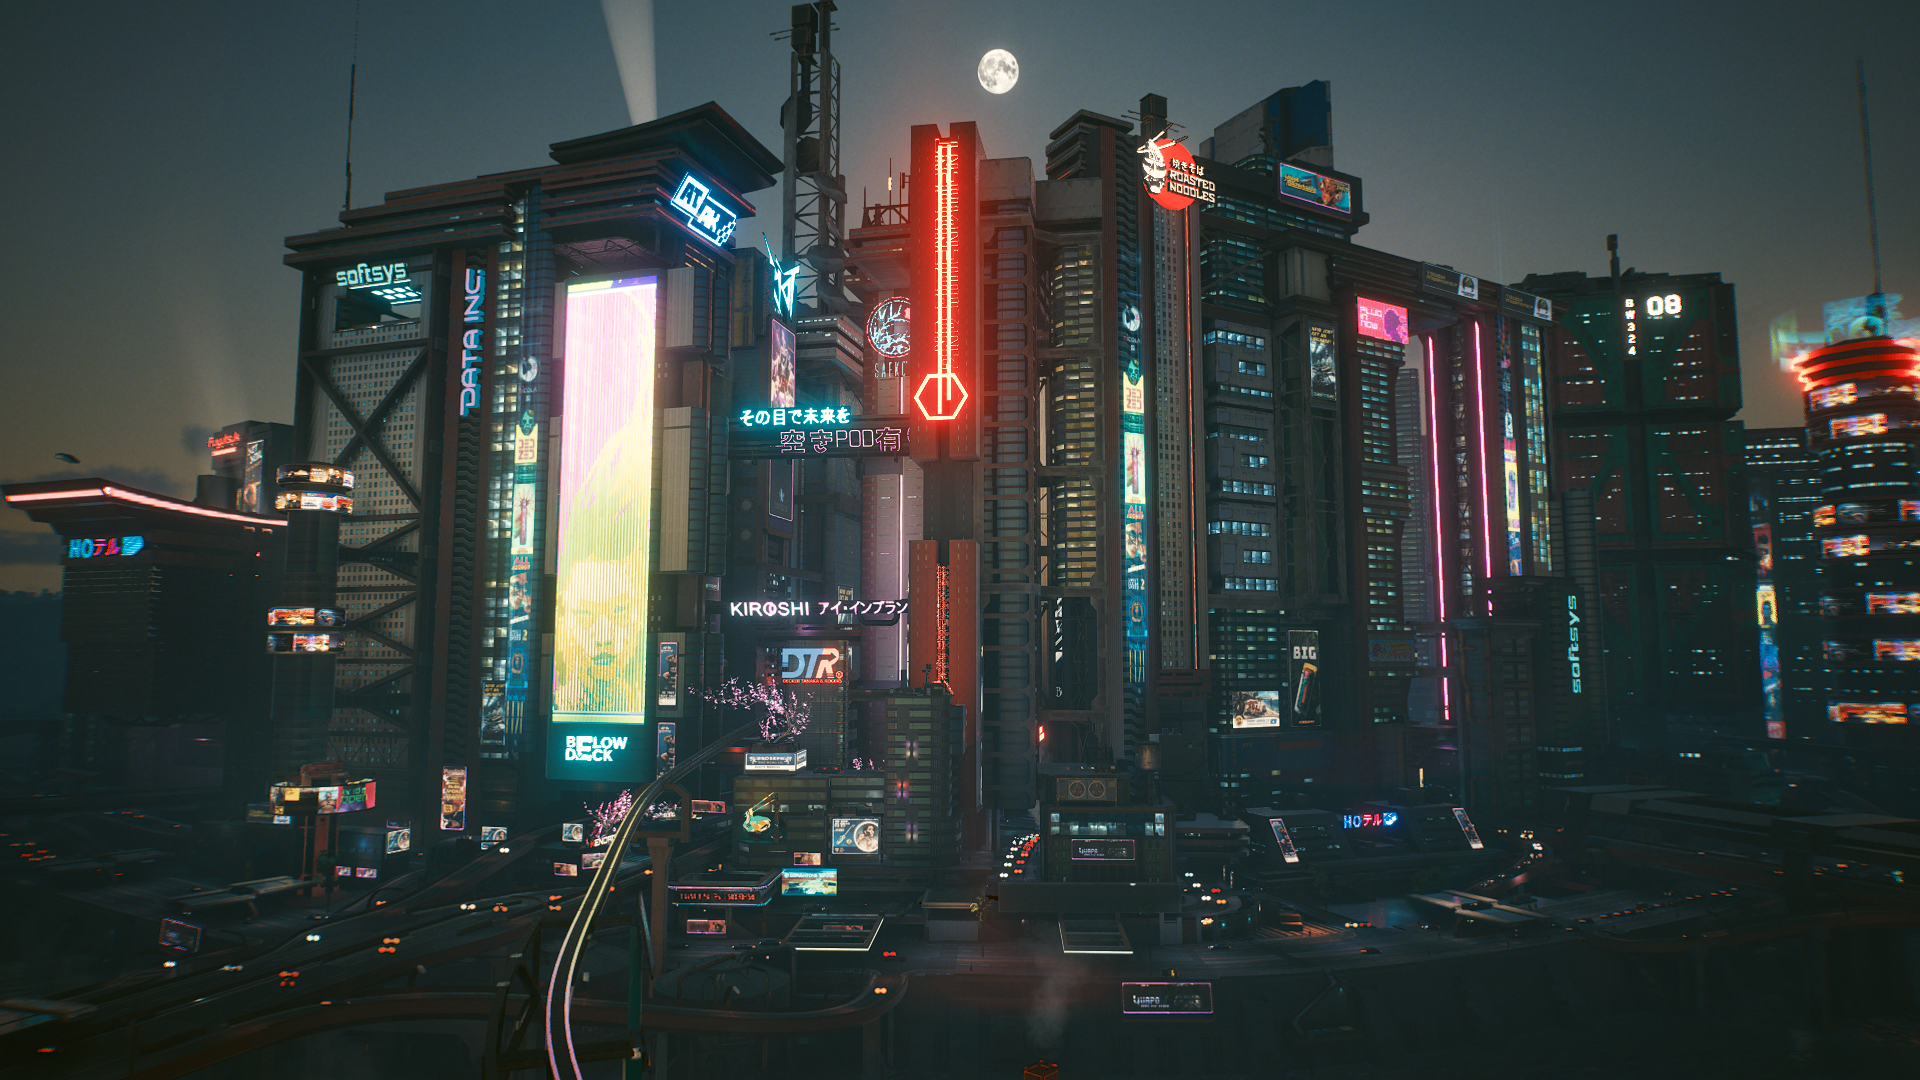 General 1920x1080 Cyberpunk 2077 cyber city futuristic futuristic city video games PC gaming